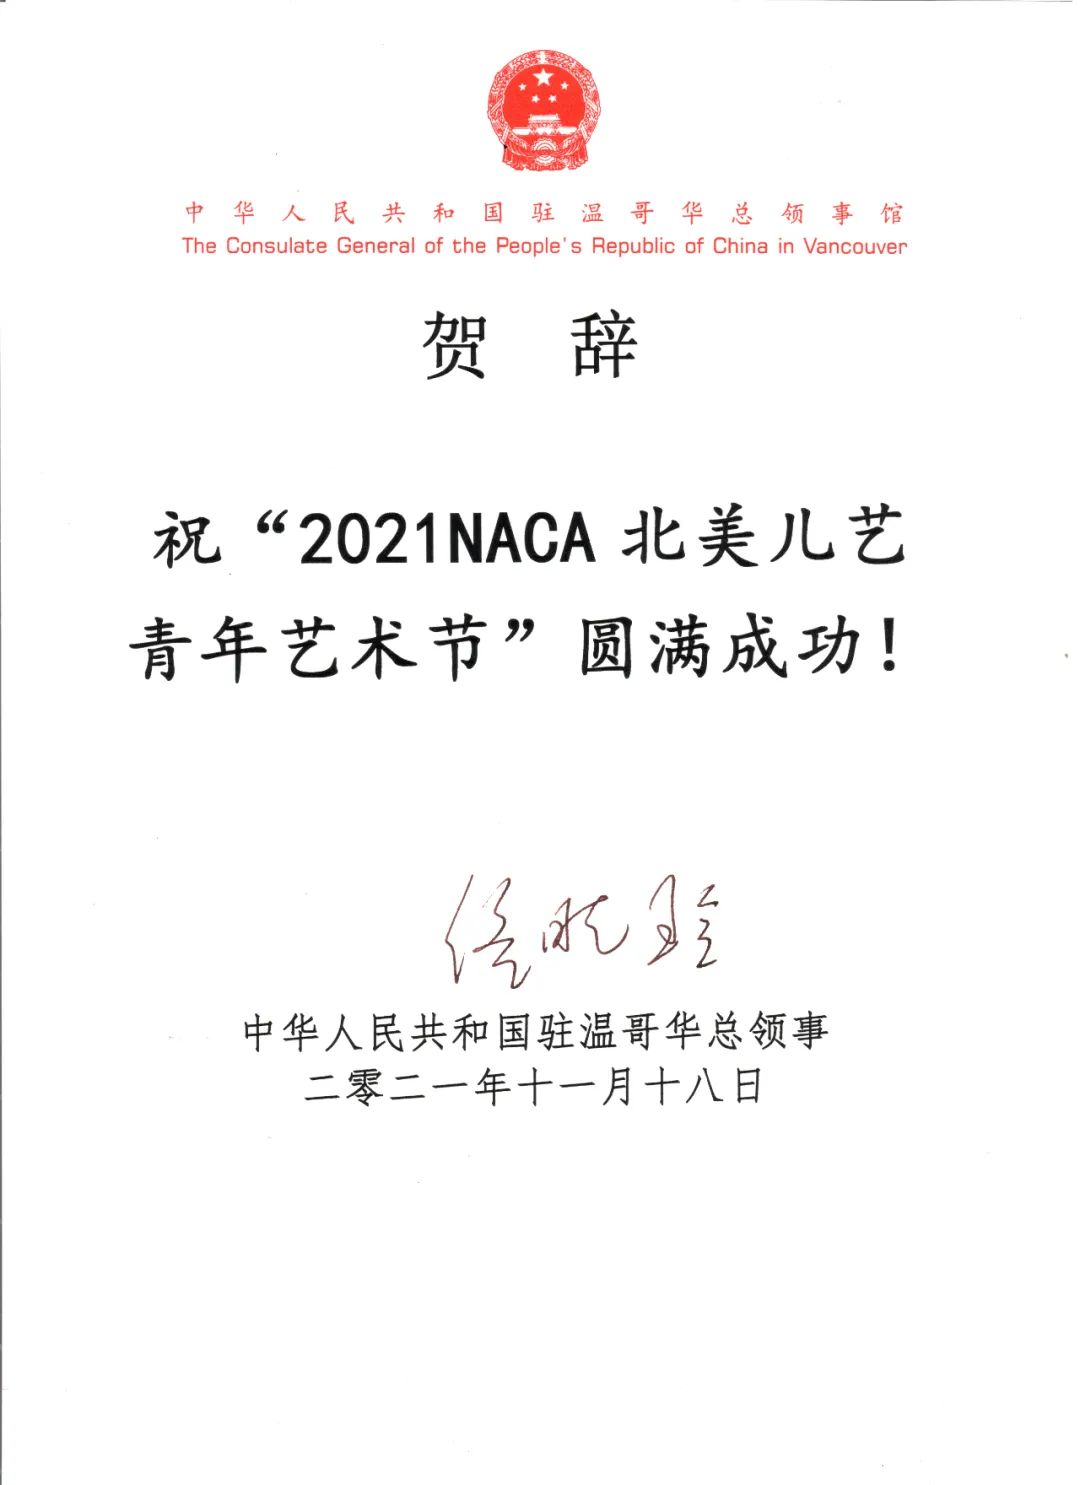 2021 NACAԲ CACnews 3